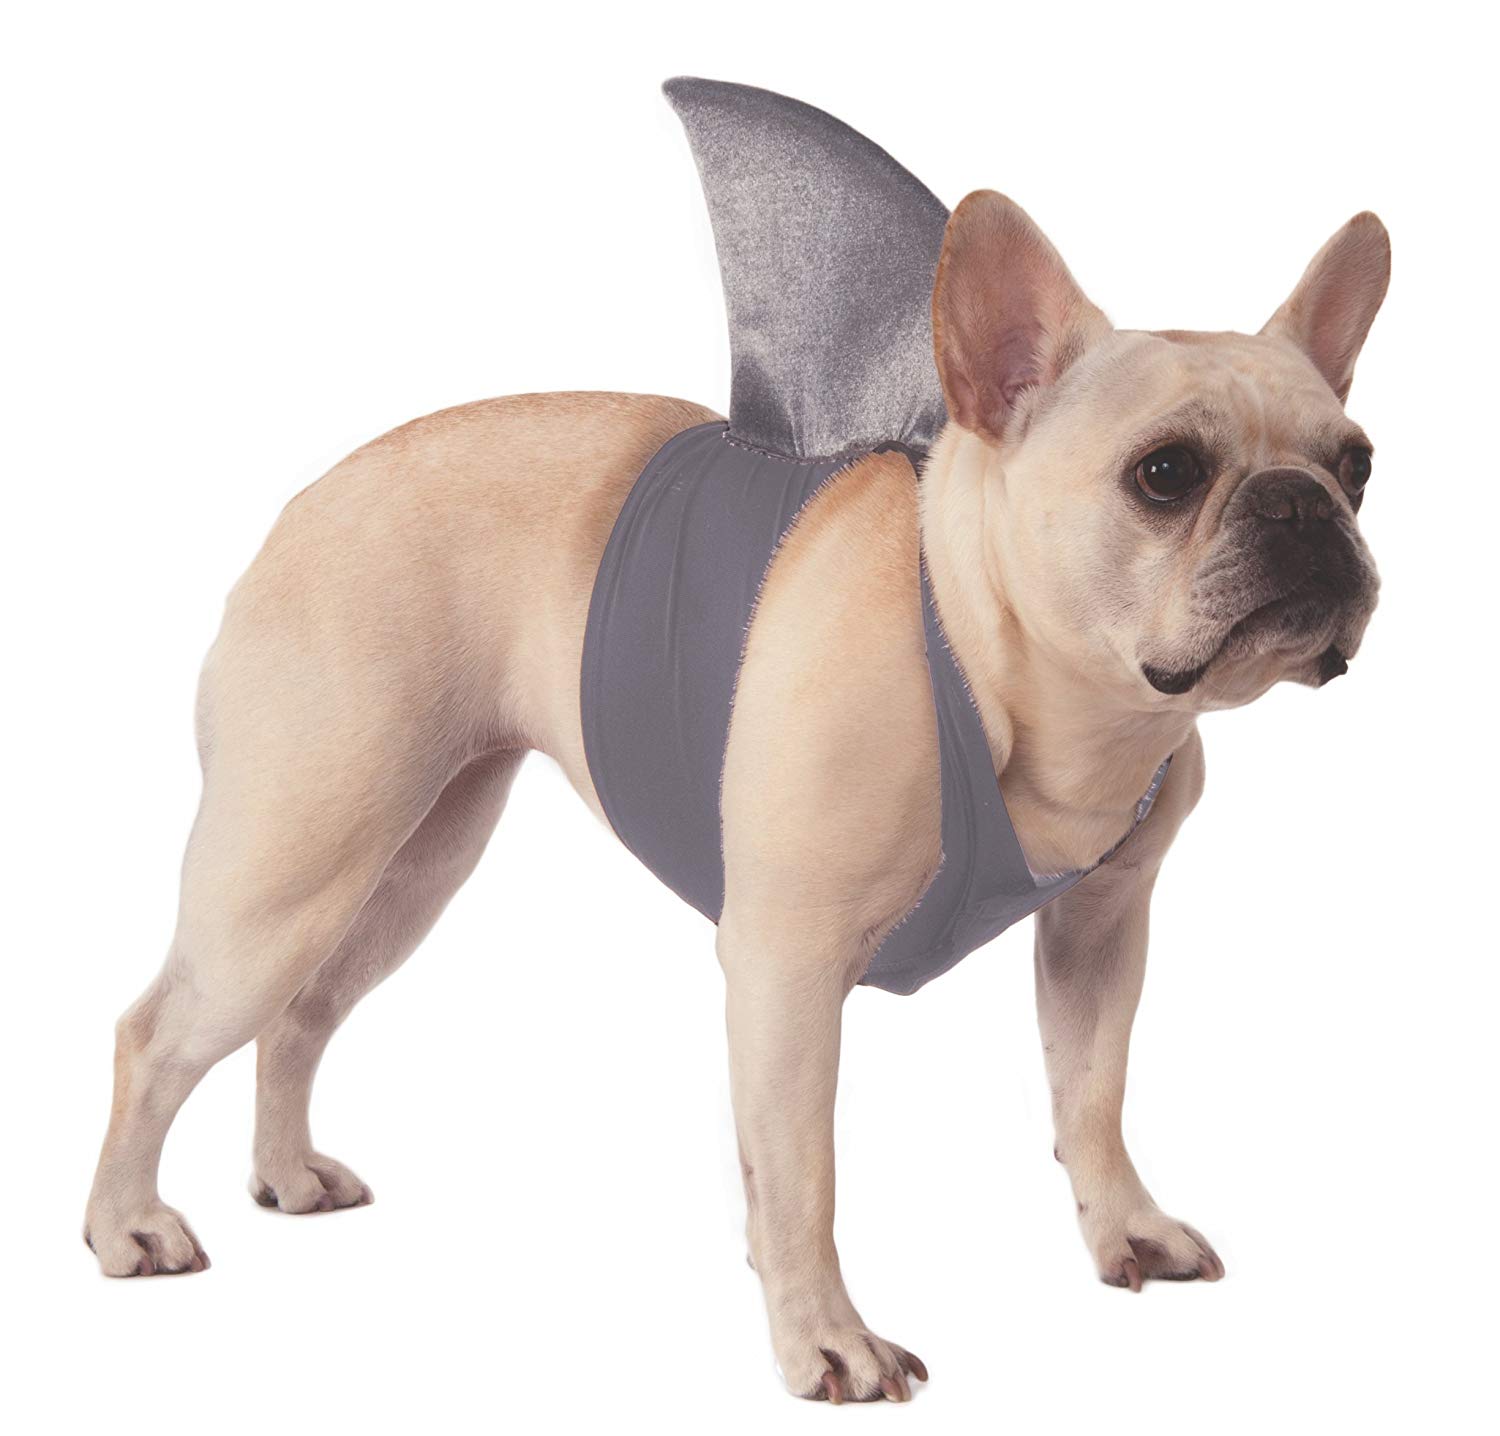 French Bulldog wearing a Shark Fin Costume